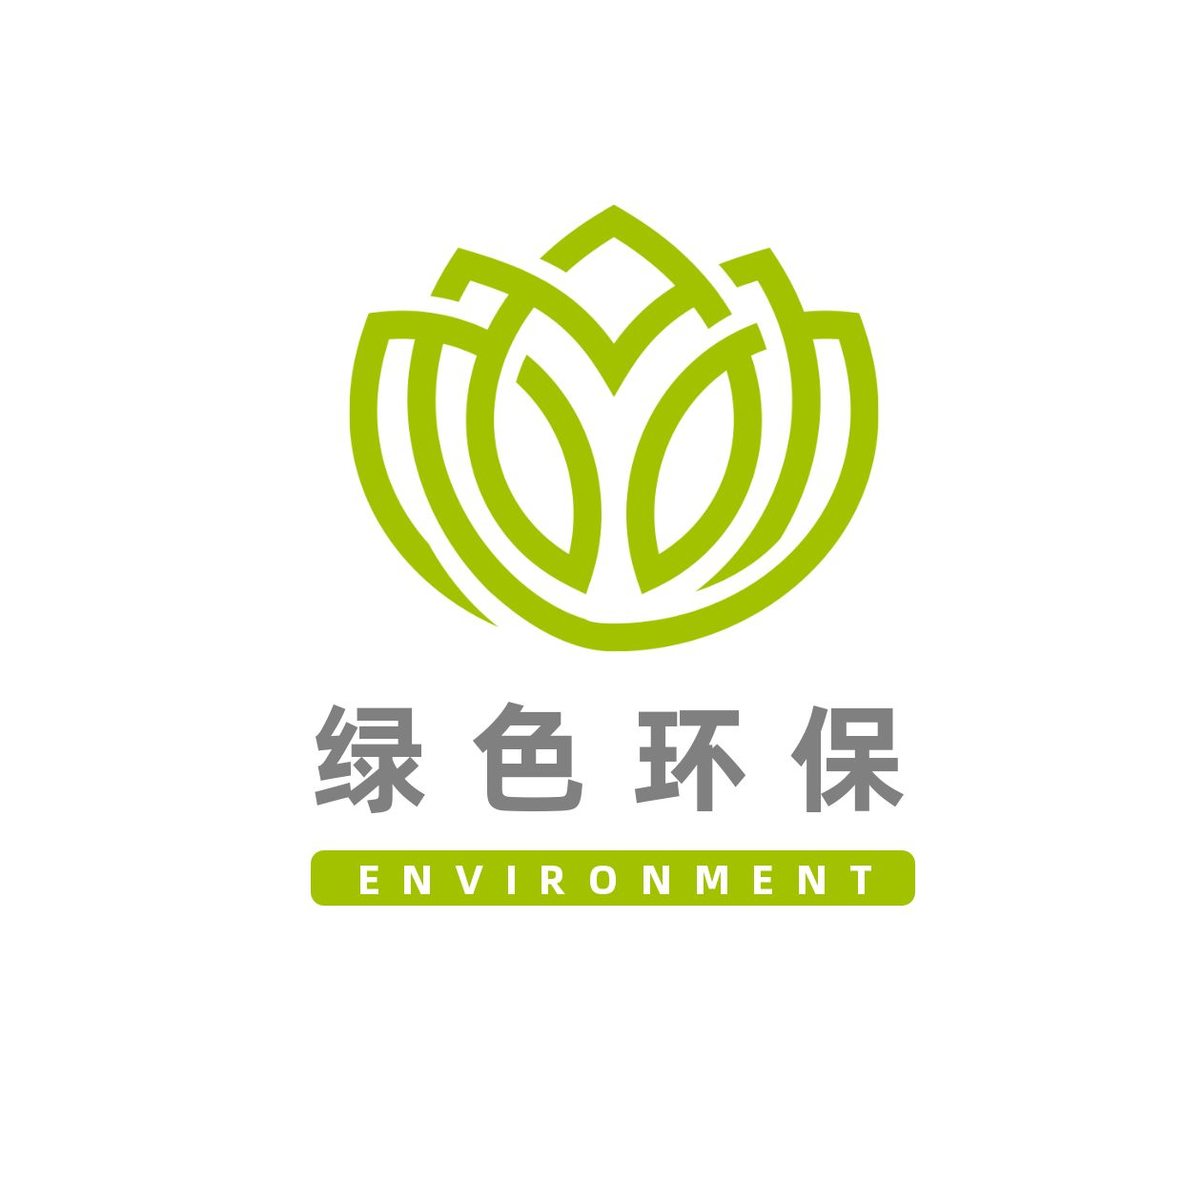 公益环保自然logo1